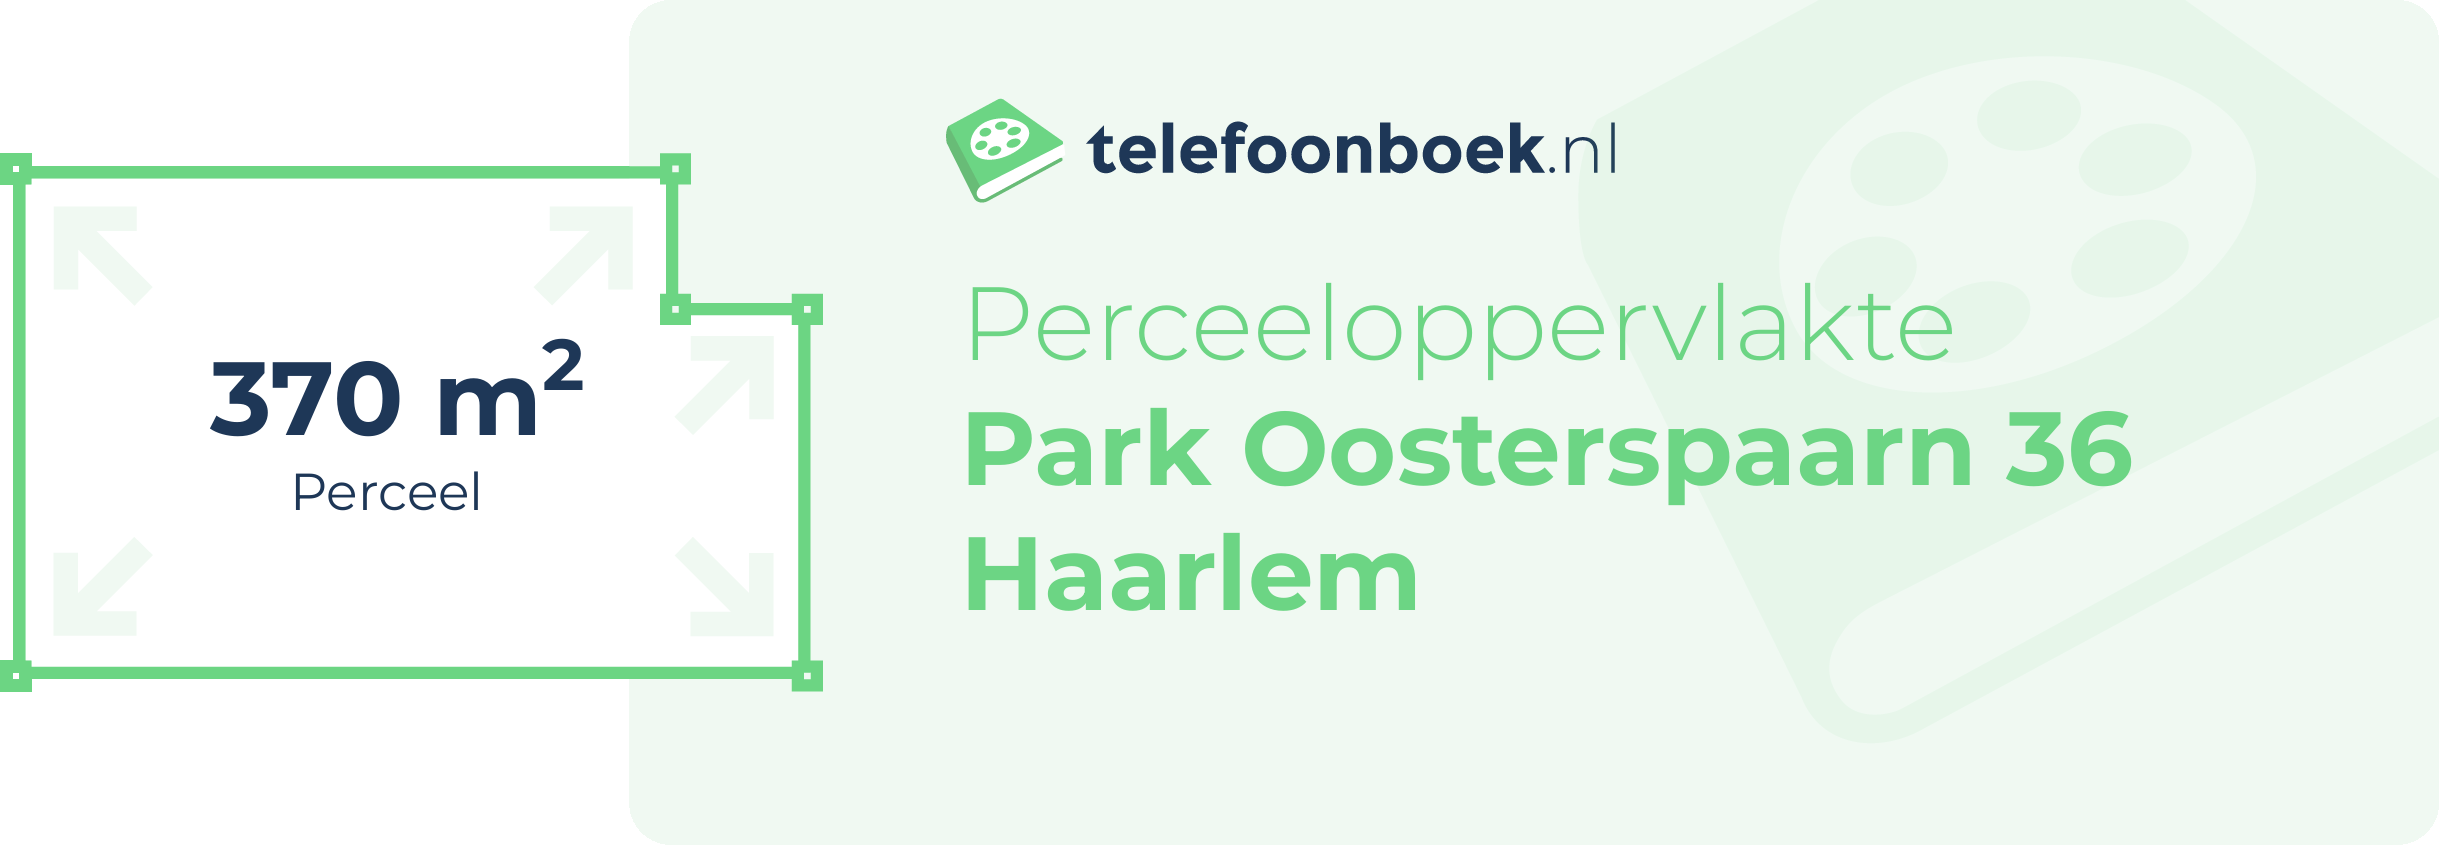 Perceeloppervlakte Park Oosterspaarn 36 Haarlem